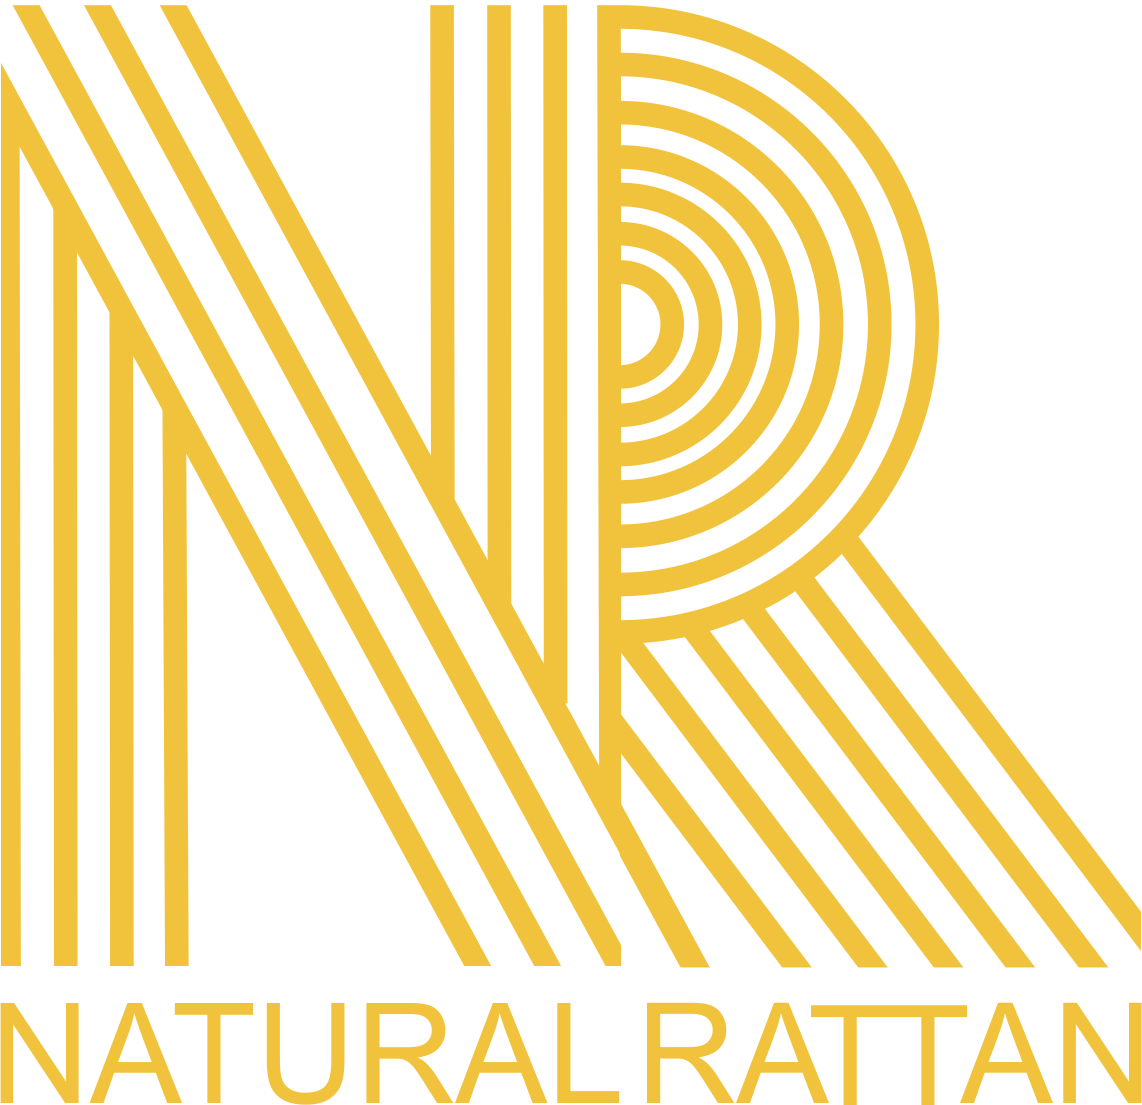 Leverandør af engros i naturlige rottingmøbler | Rattan børnemøbler